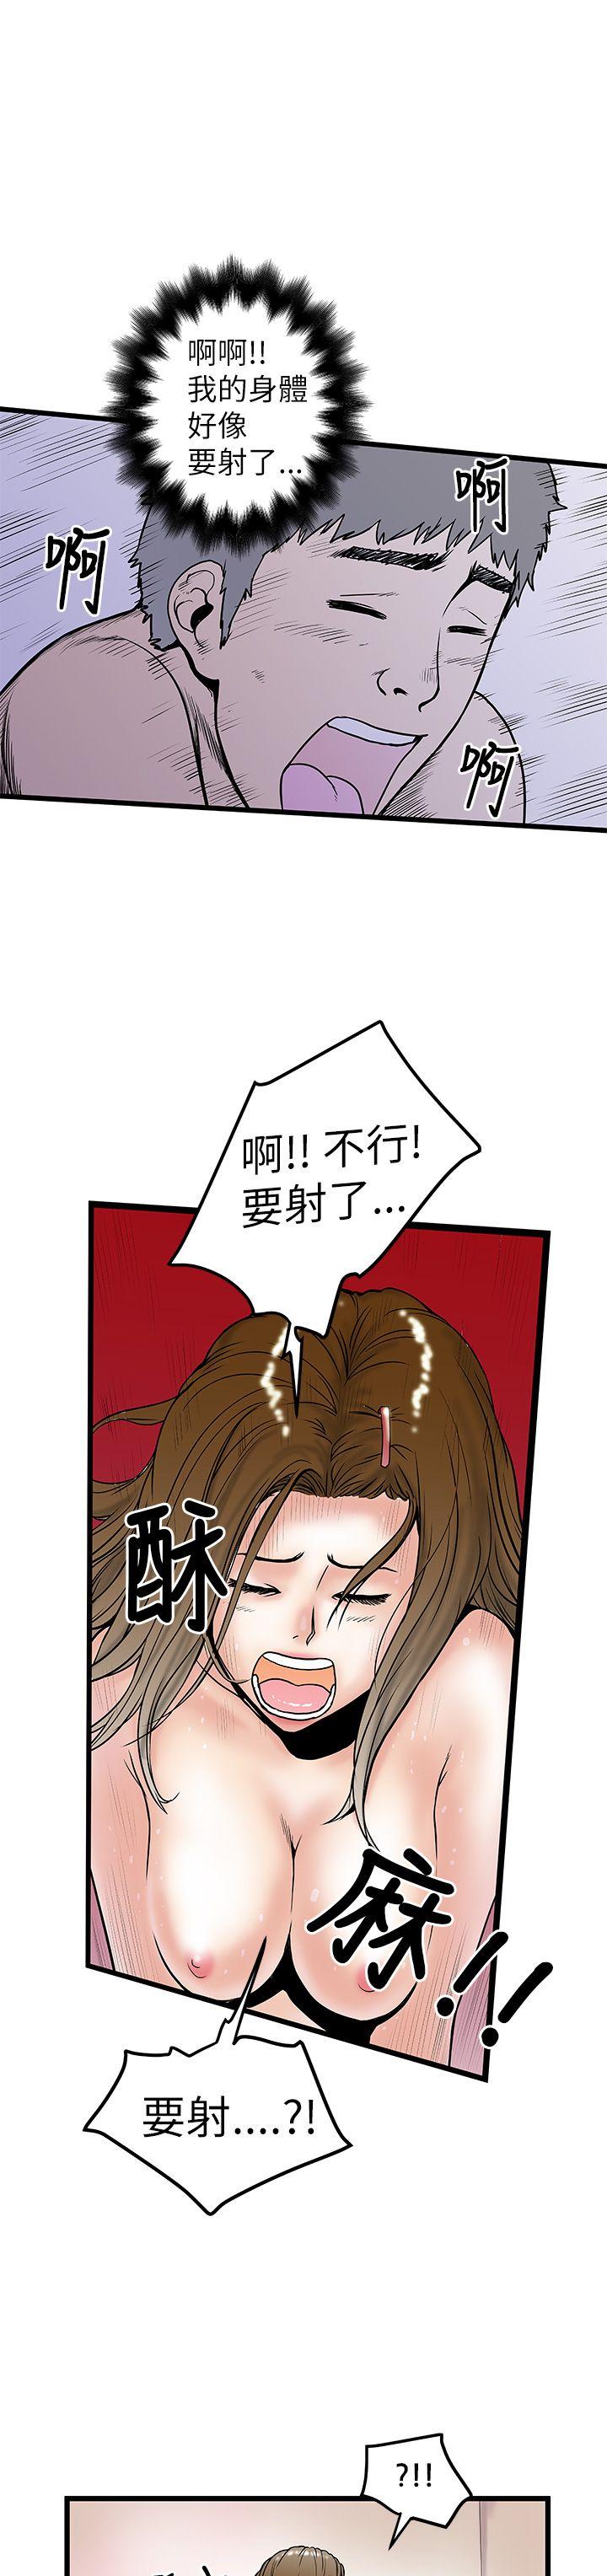 韩国污漫画 想像狂熱 第9话 25